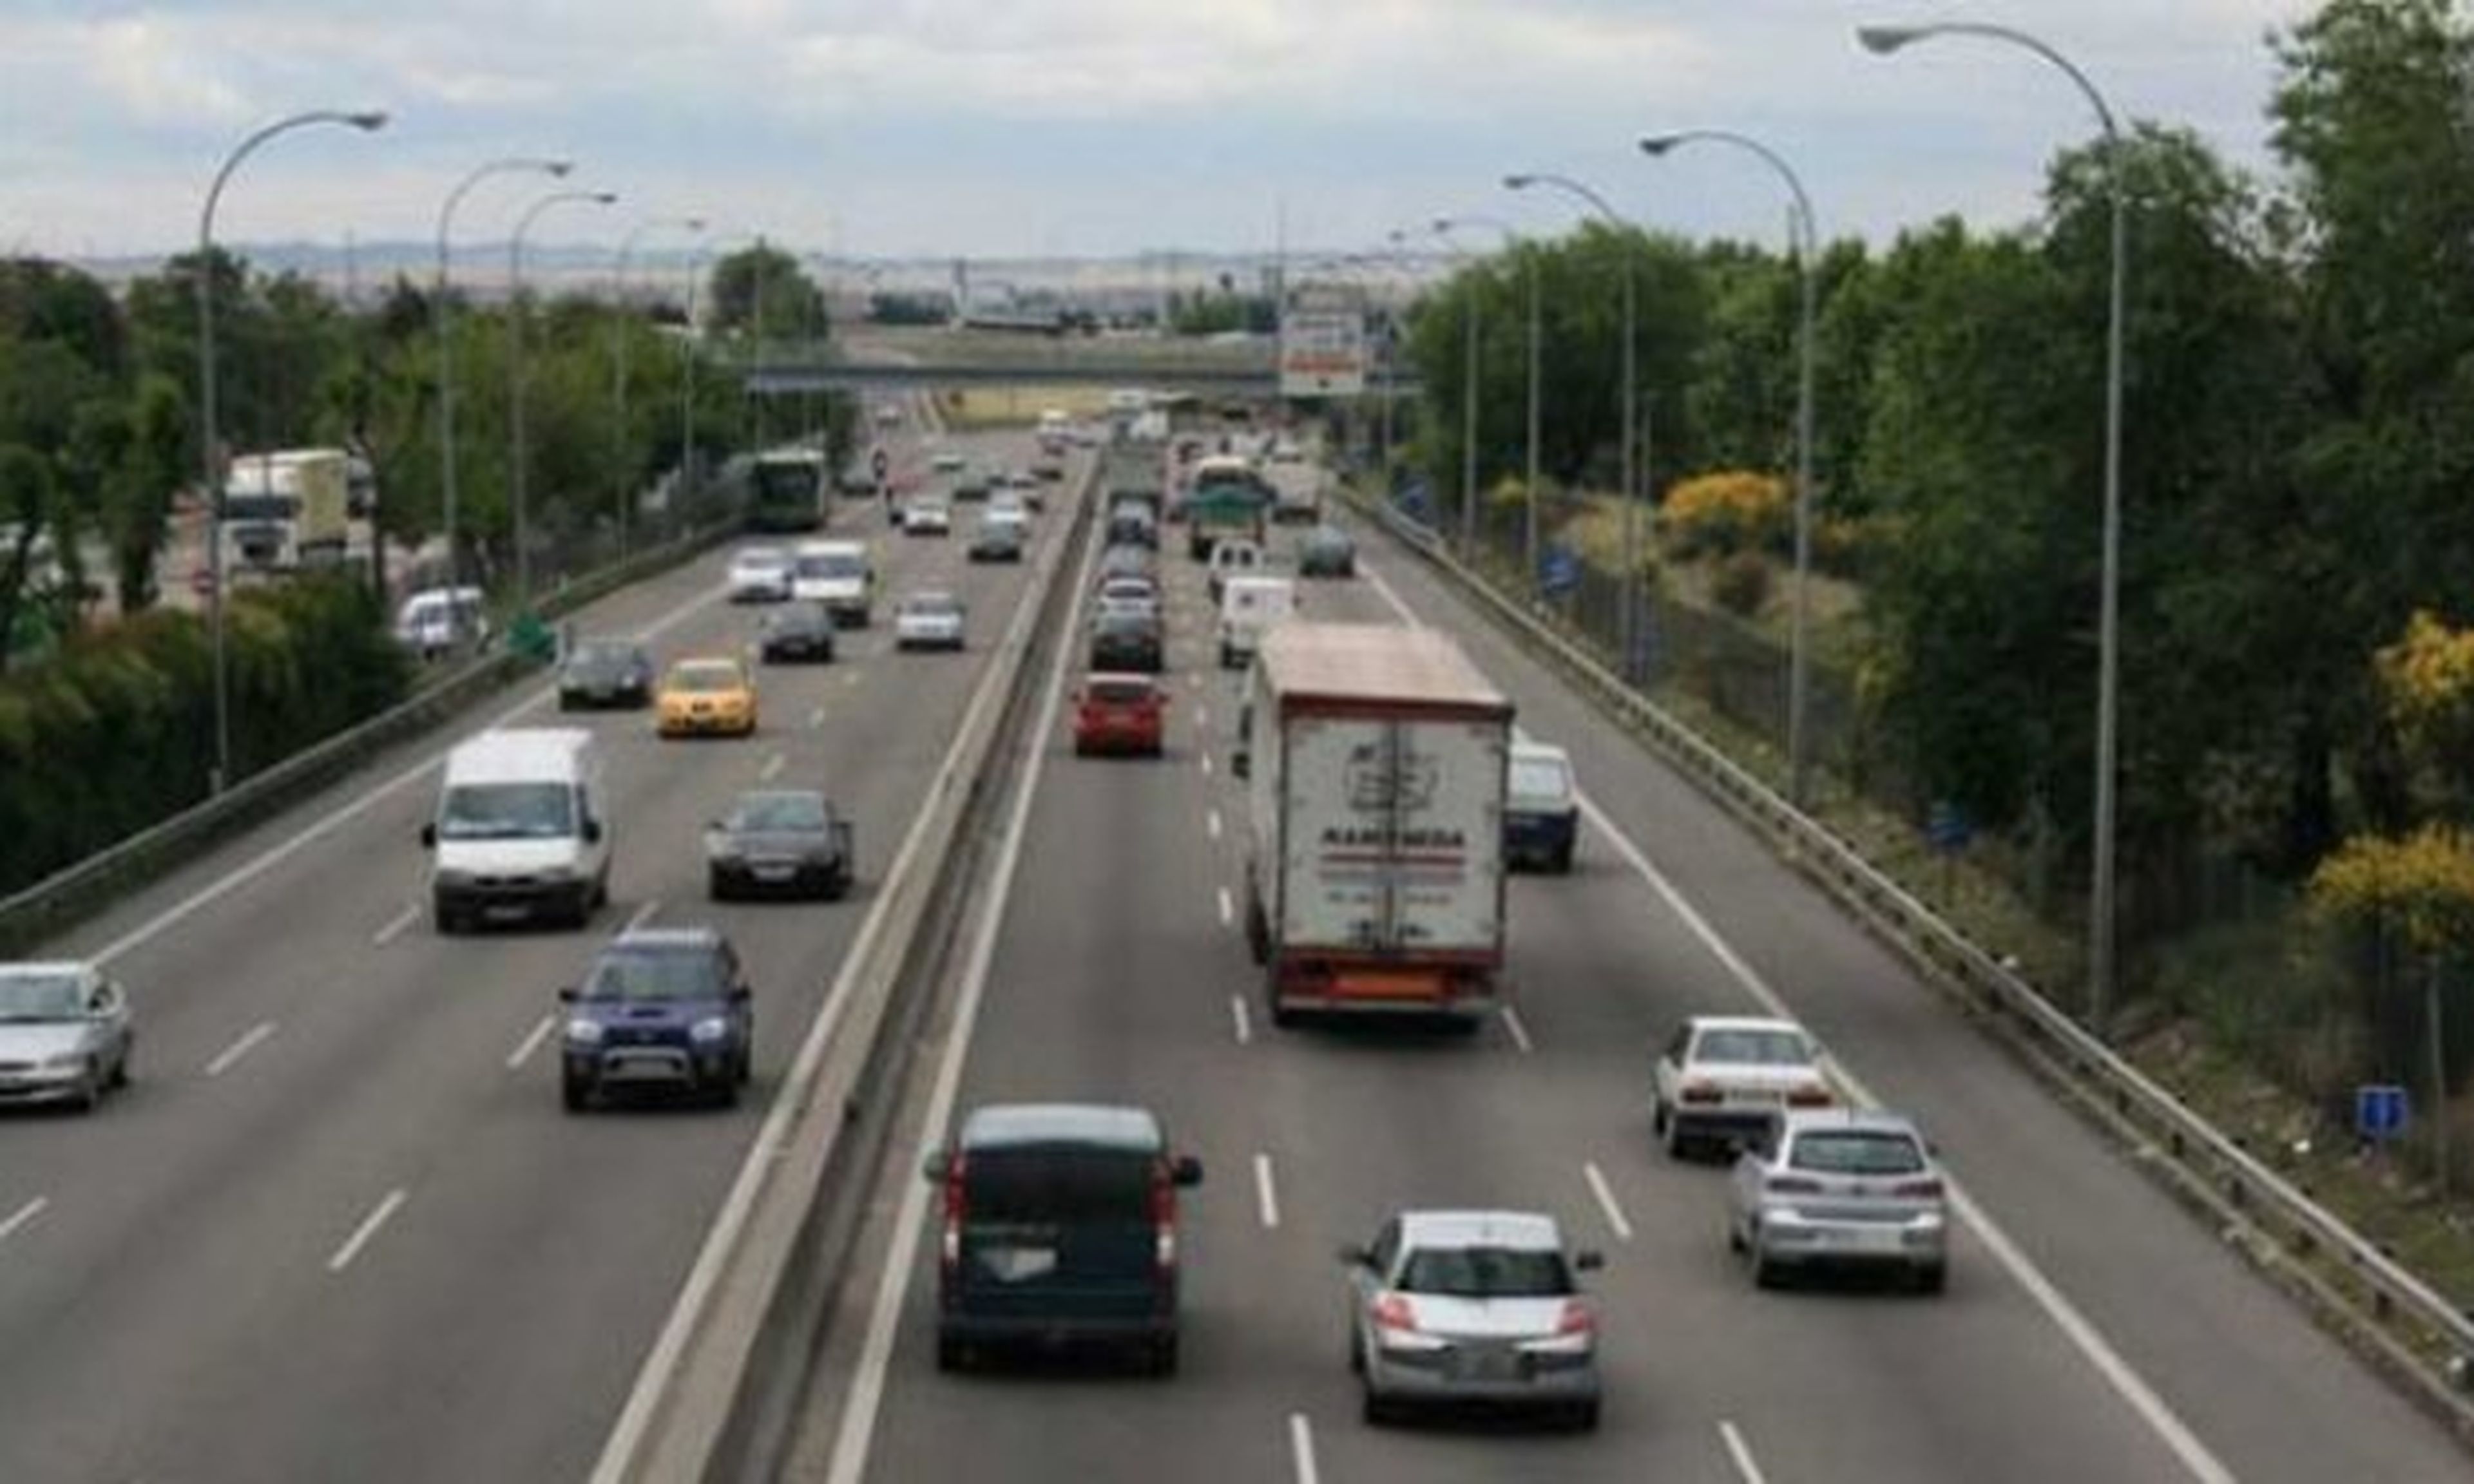 DGT propone subir el límite a 130 km/h en tramos de autovía